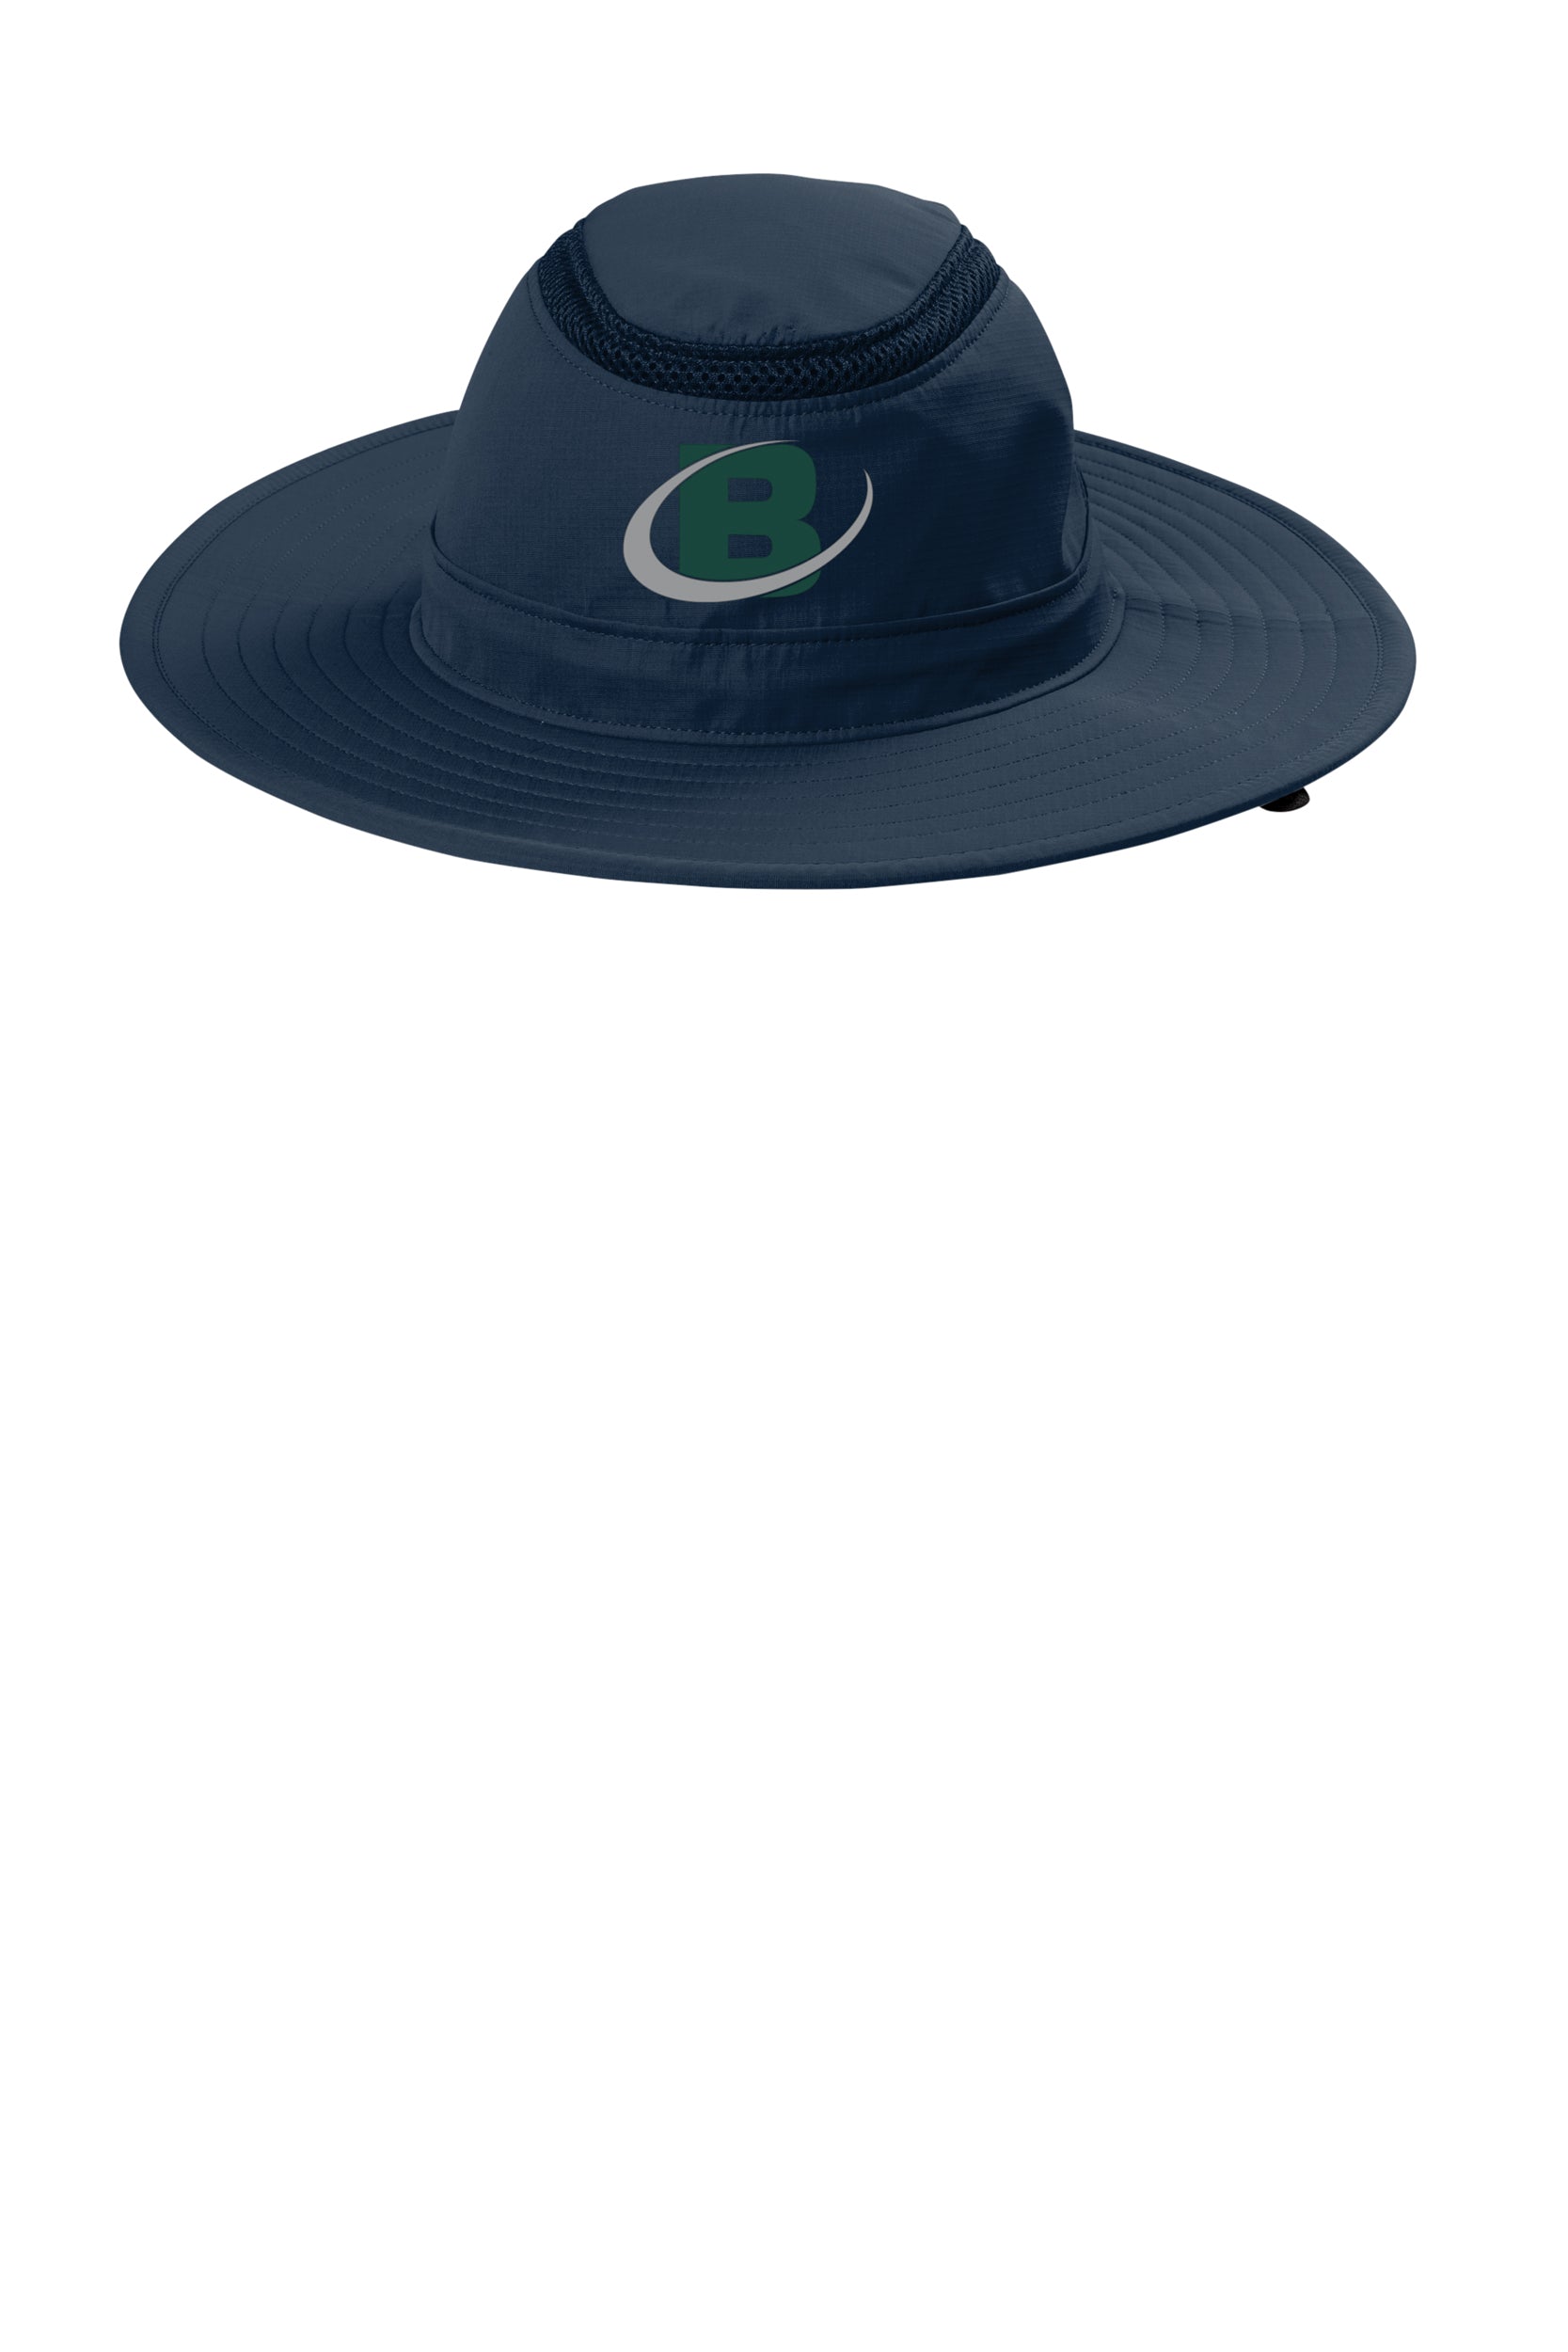 Bowman Turfgrass Professionals - Wide Brim Bucket Hat